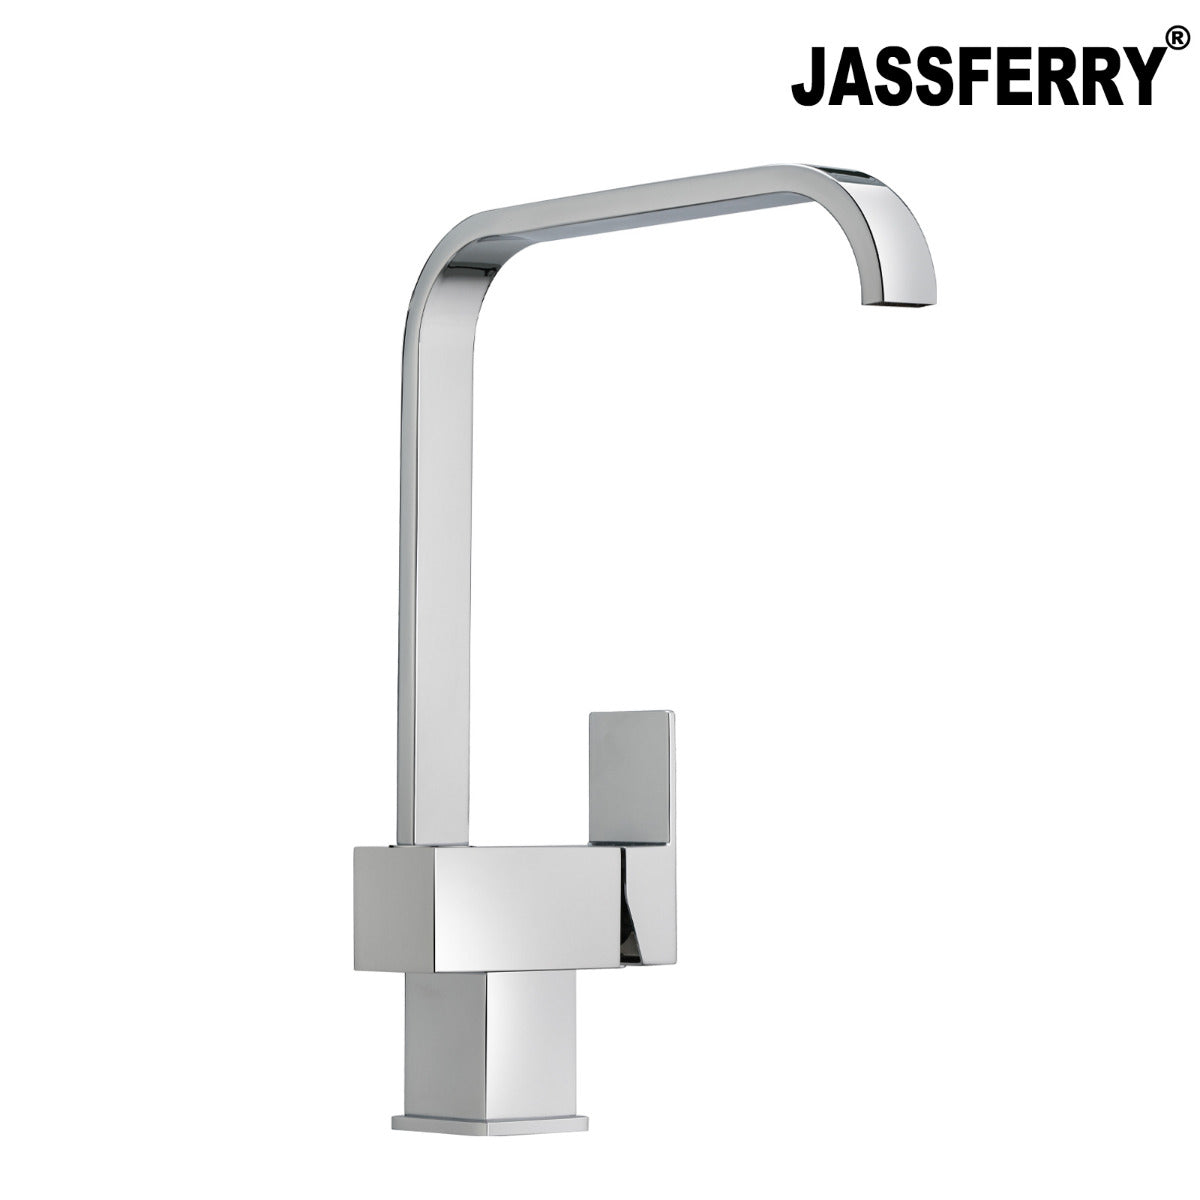 JassferryJASSFERRY New Square Kitchen Sink Tap Mixer Modern Monobloc Brass Swivel SpoutKitchen taps